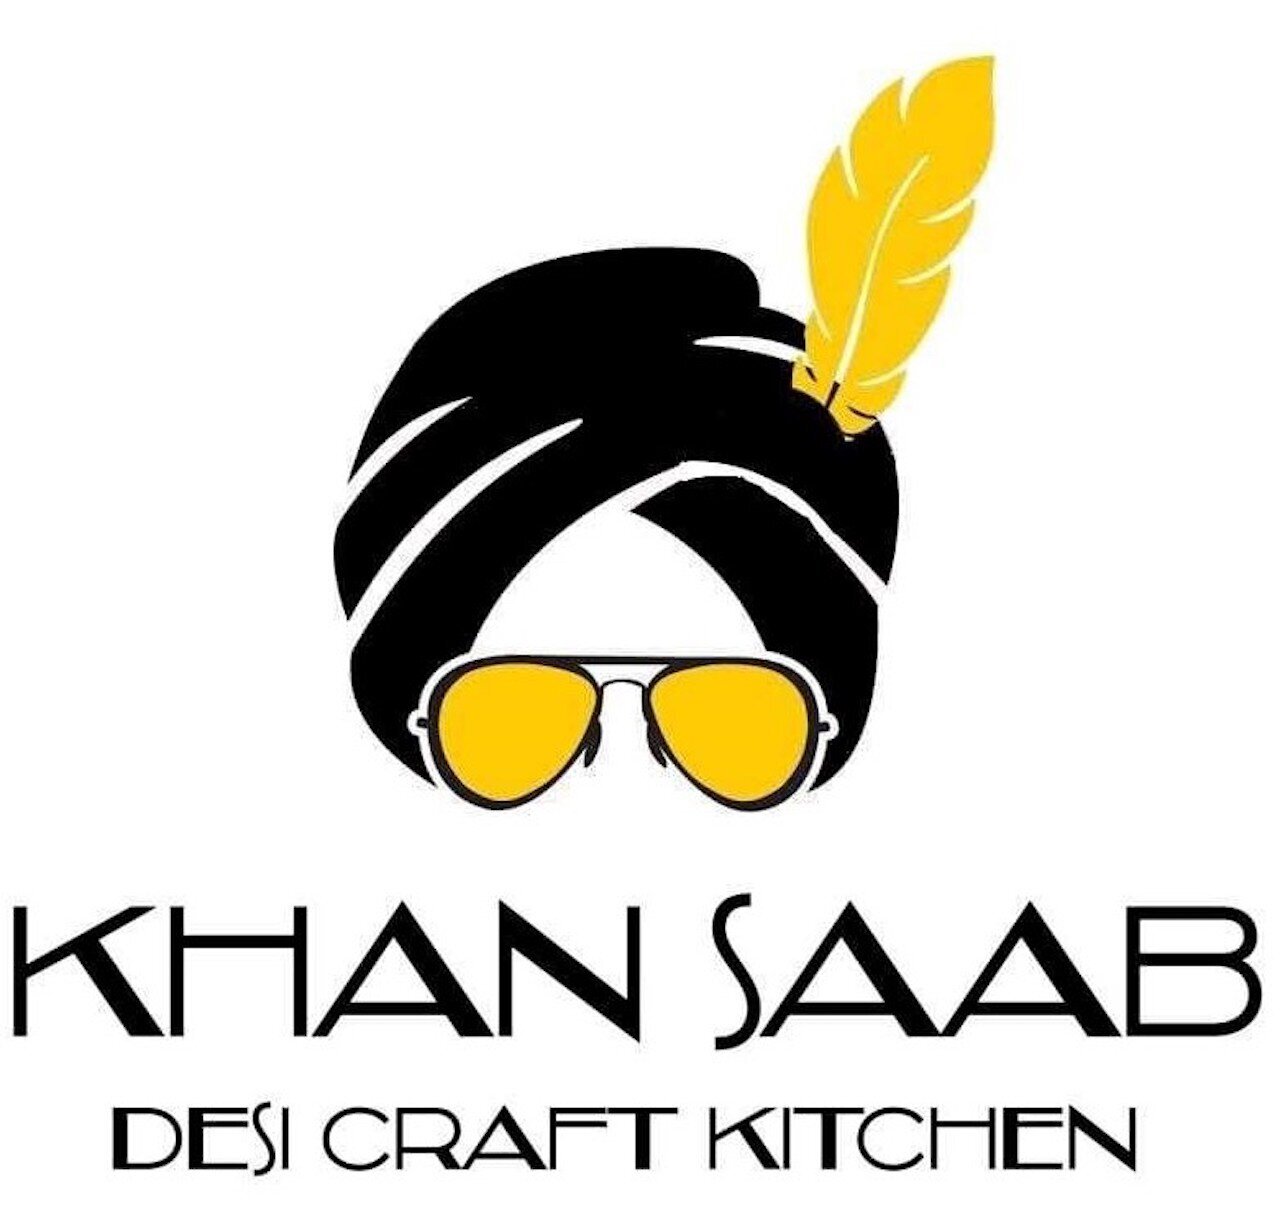 Khan Saab Logo.jpg